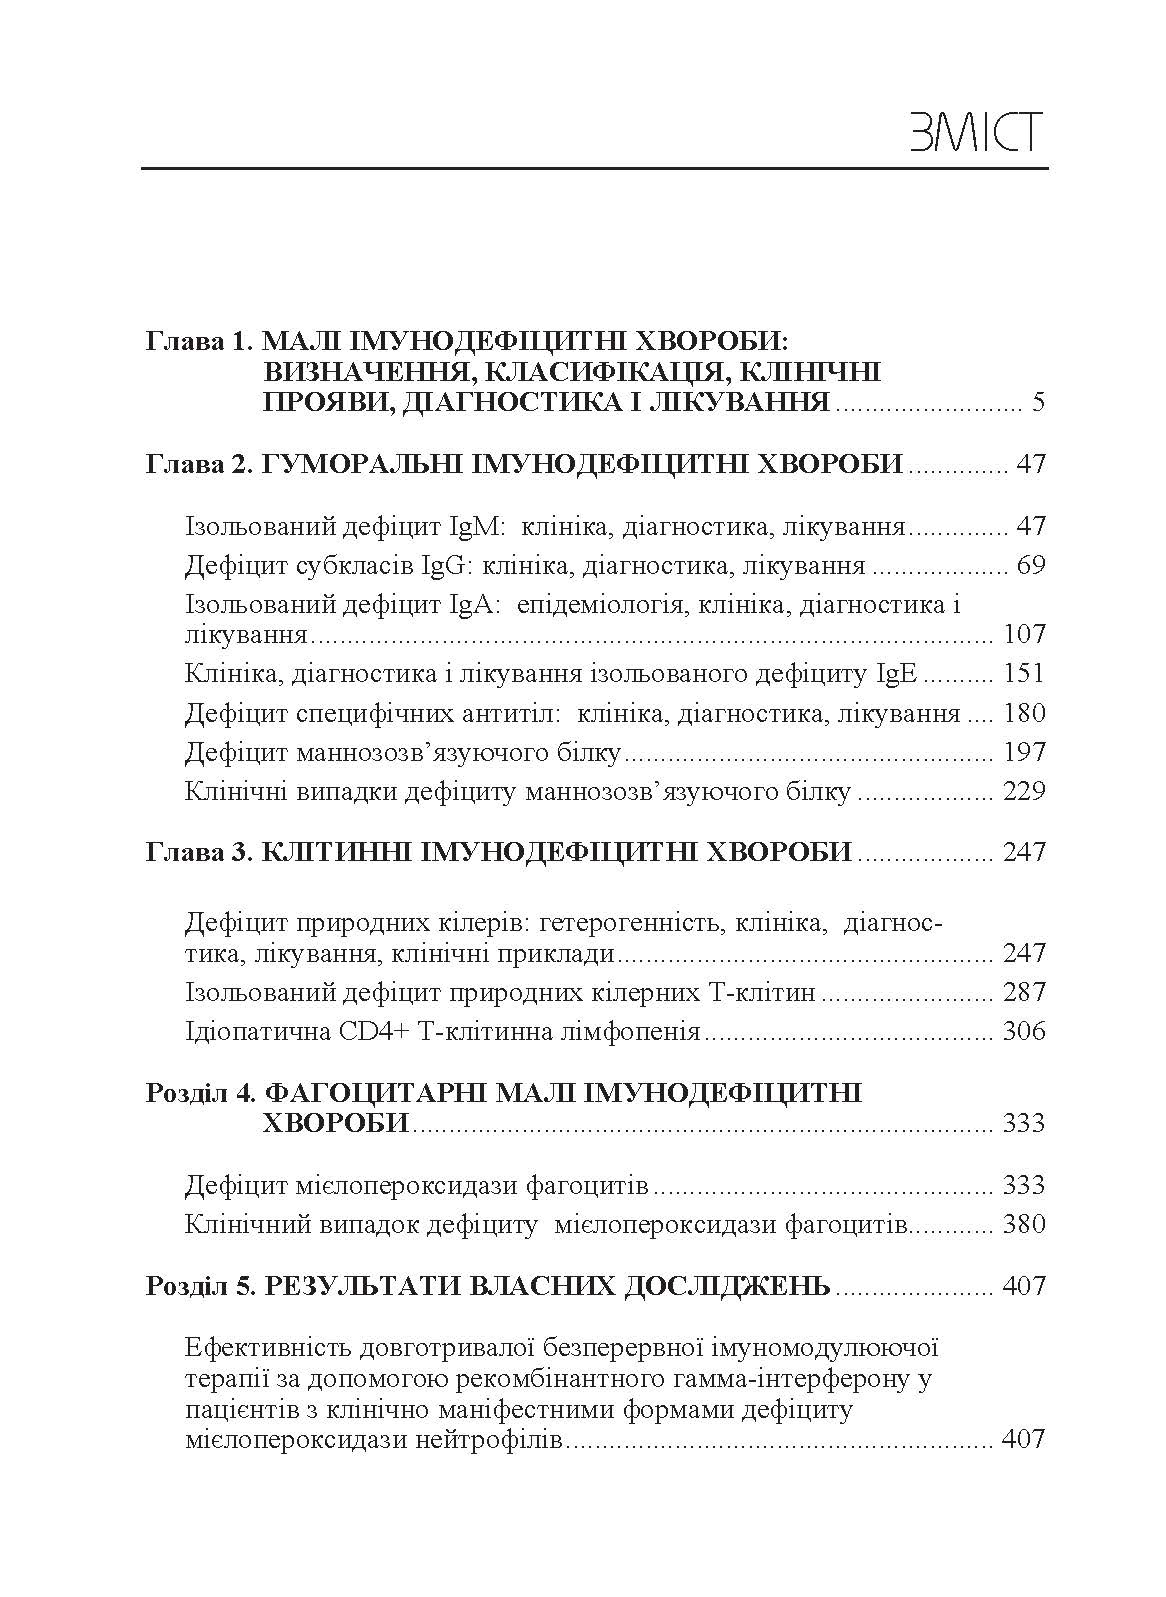 Малі імунодефіцитні хвороби  (2019 год). Автор — Мальцев Д.В.. 